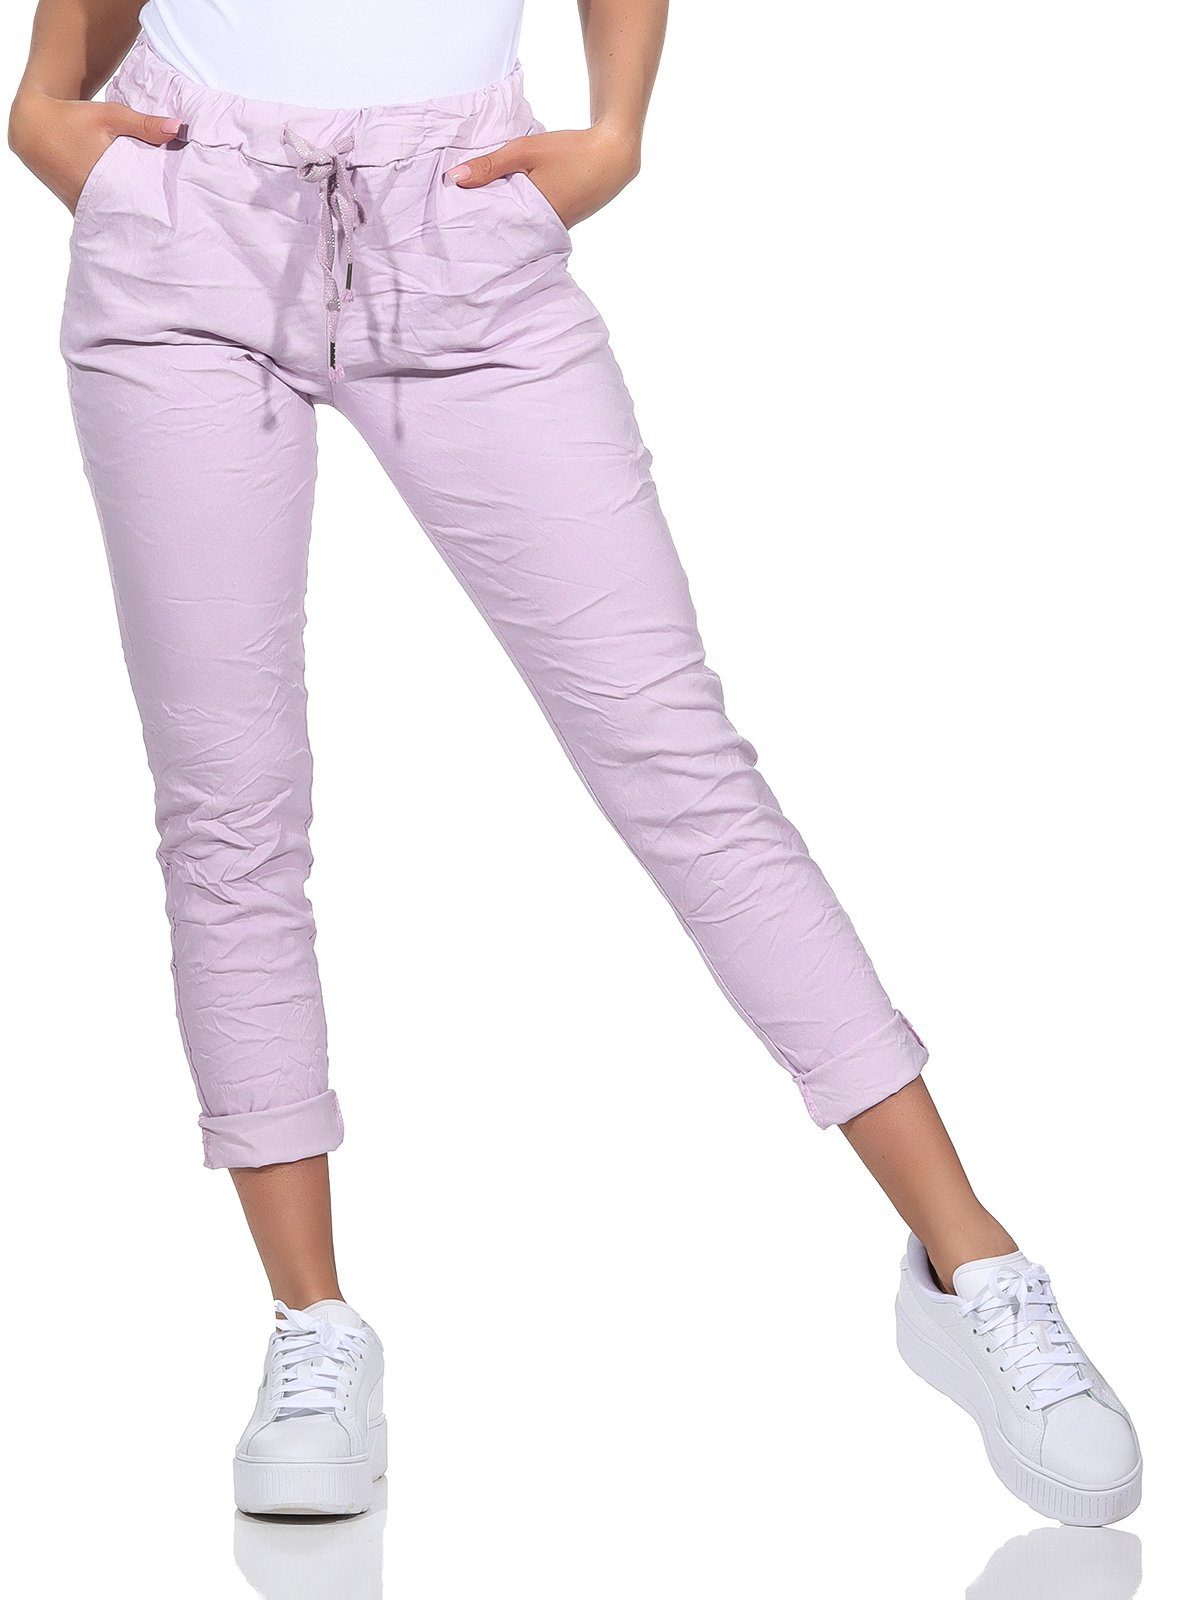 Aurela Damenmode Schlupfhose Sommerhose Damen Chinohose leichte Schlupfhose auch in großen Größen erhältlich, Stretch-Jeans in modischen Sommerfarben, max. Körpergröße 1,69m Flieder | Schlupfhosen